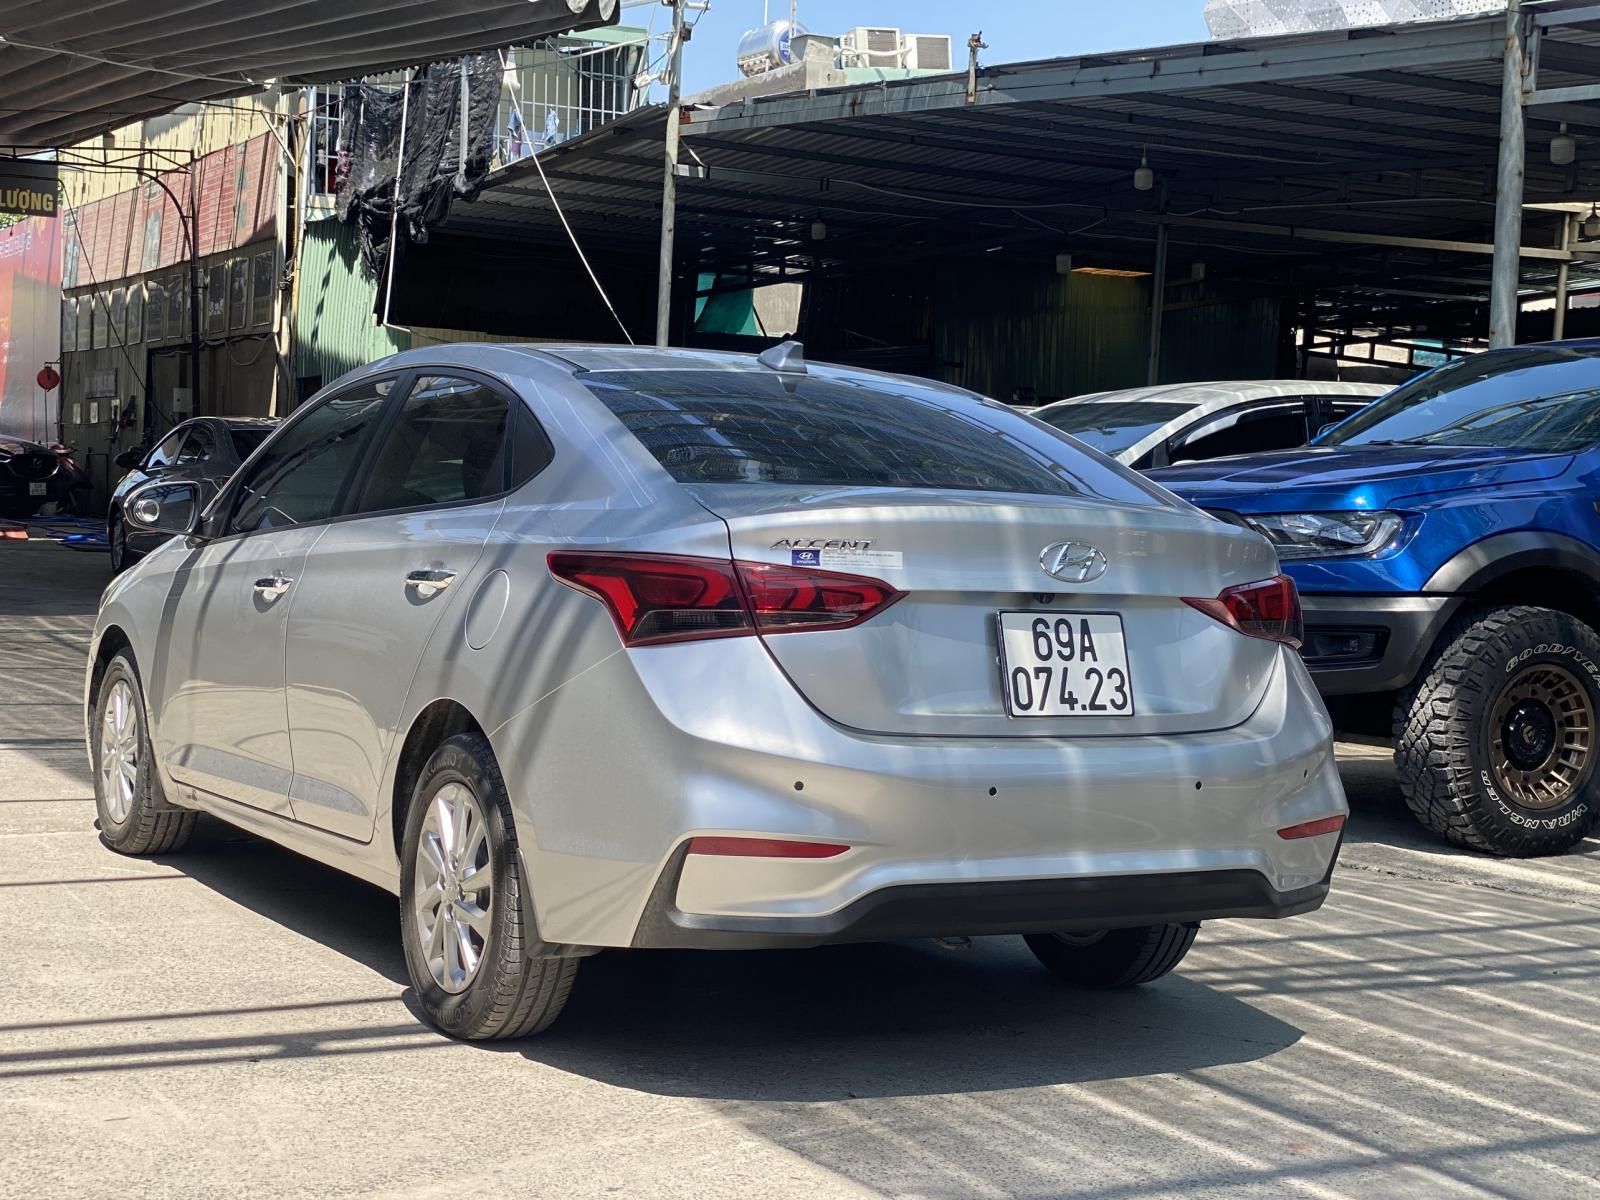 Cần bán gấp xe Hyundai Accent AT màu bạc, năm sản xuất 2019, cam kết động cơ hộp số nguyên bản nhà sản xuất